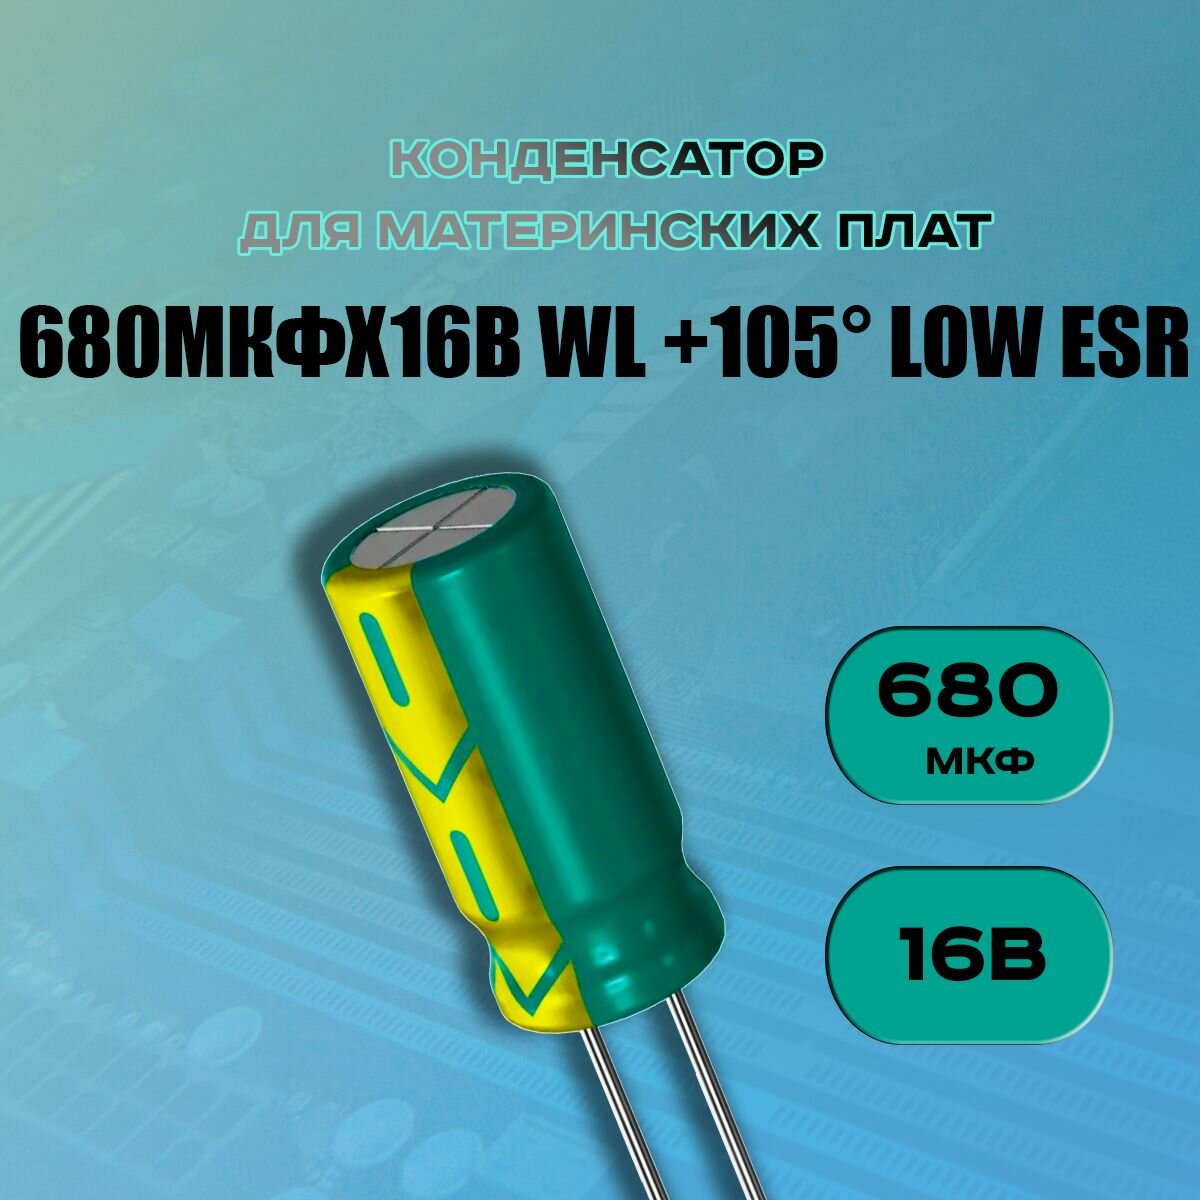 Конденсатор для материнской платы 680 микрофарат 16 Вольт (680uf 16V WL +105 LOW ESR) - 1 шт.